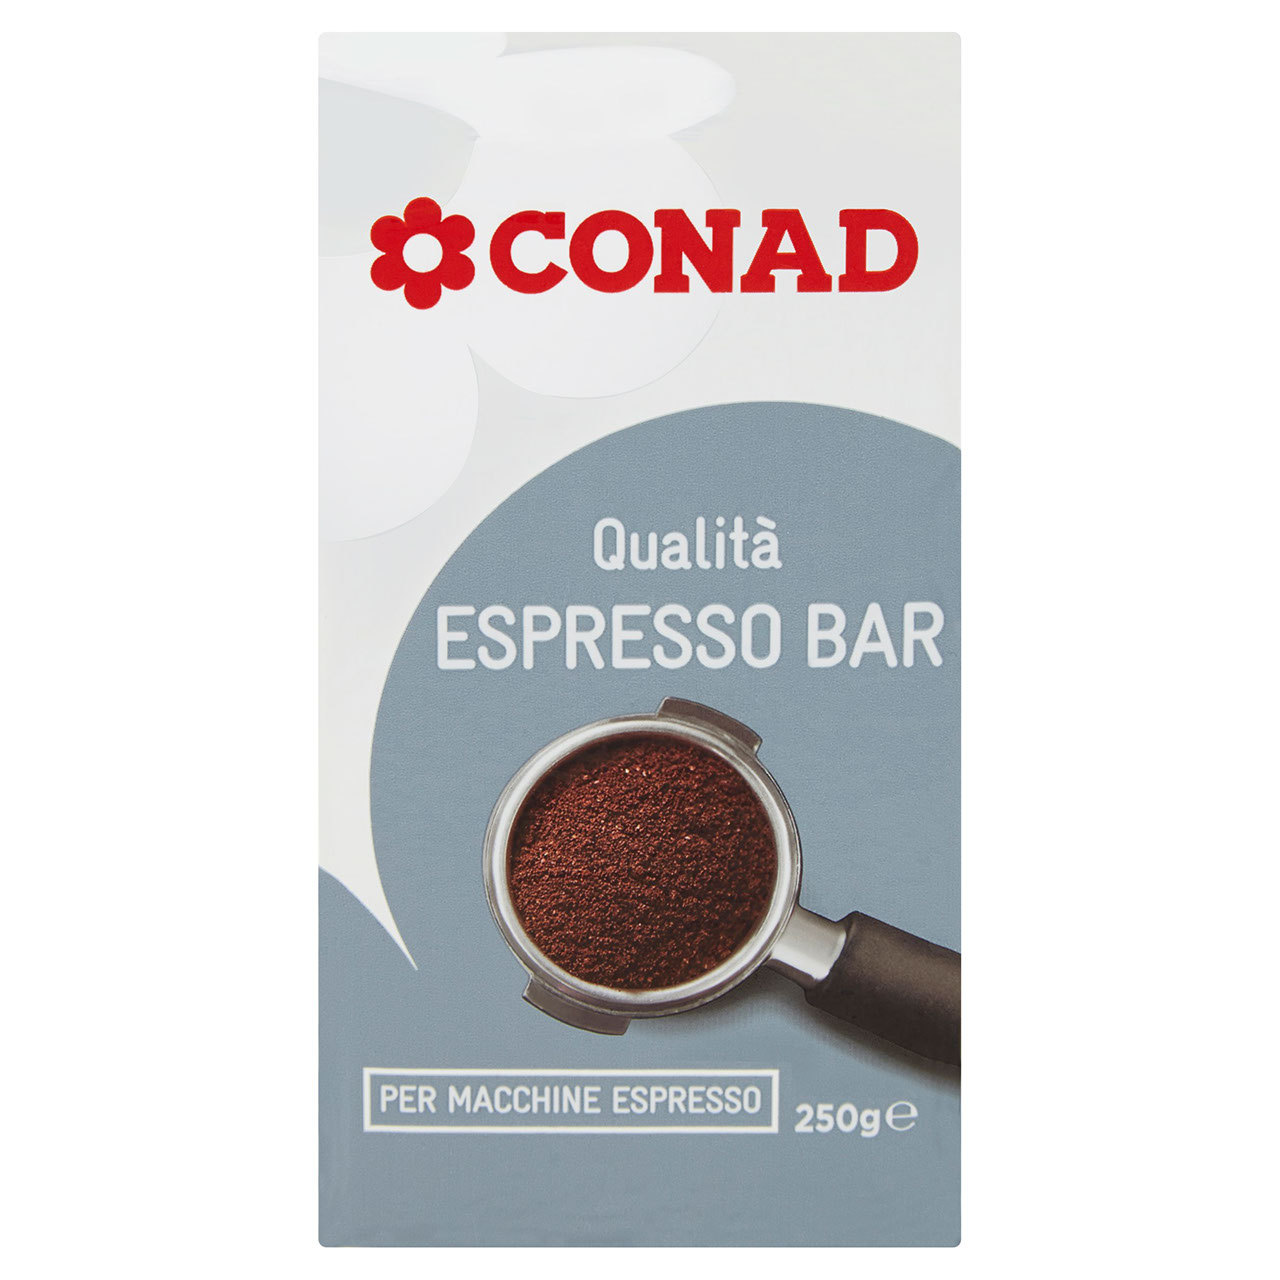 Caffè Qualità Espresso BAR Macchine Espresso Conad